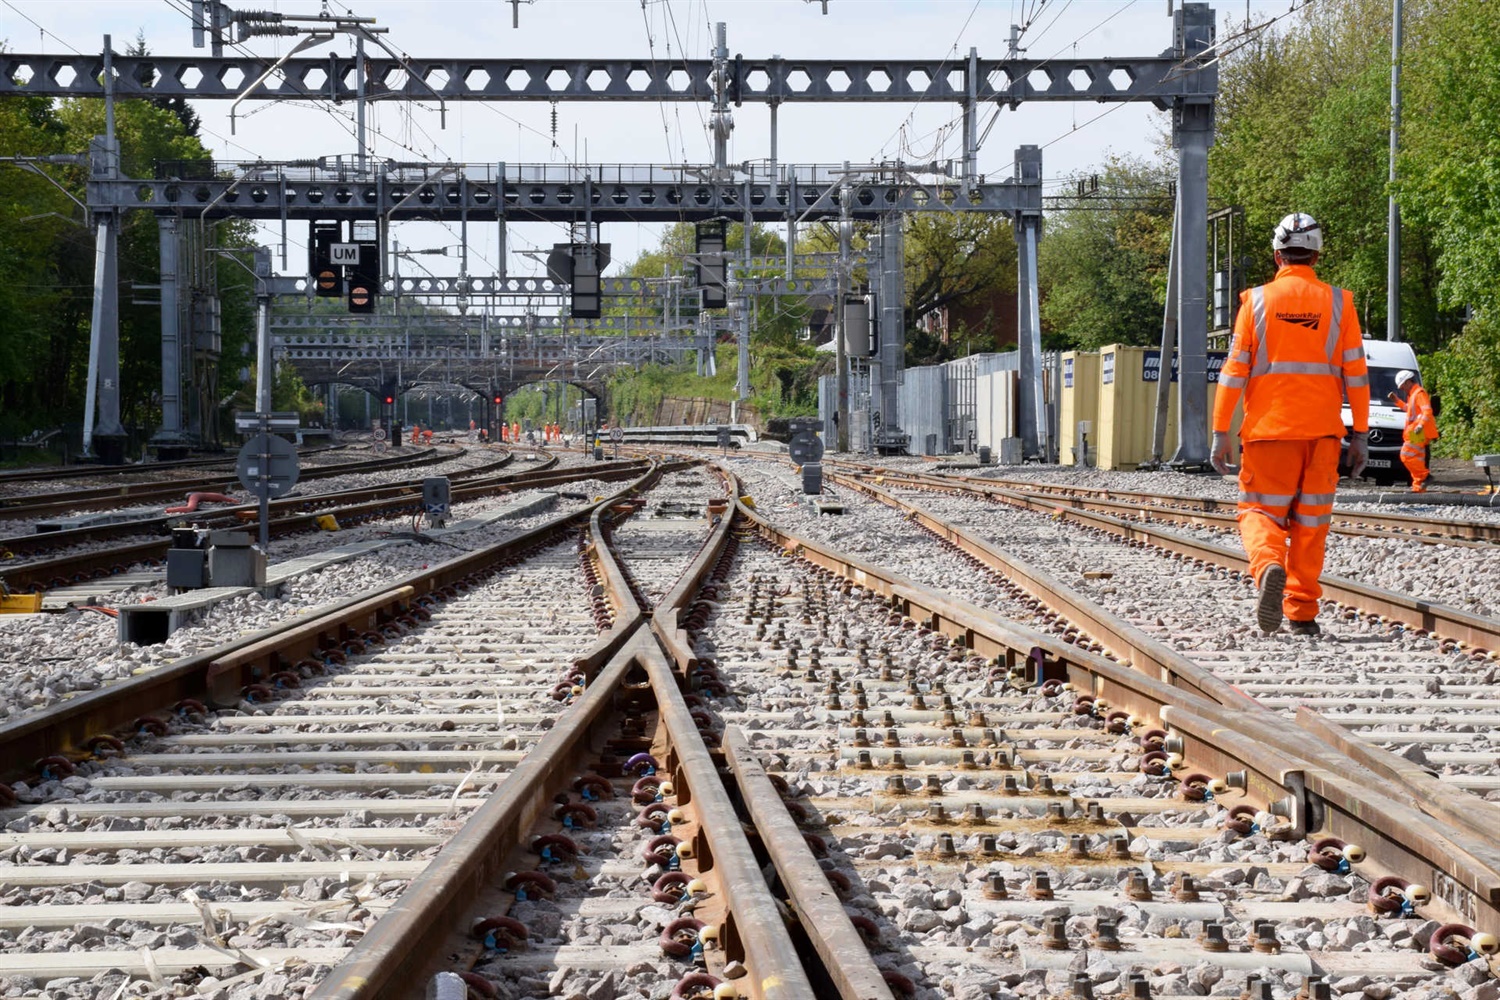 Southend to undergo rail makeover